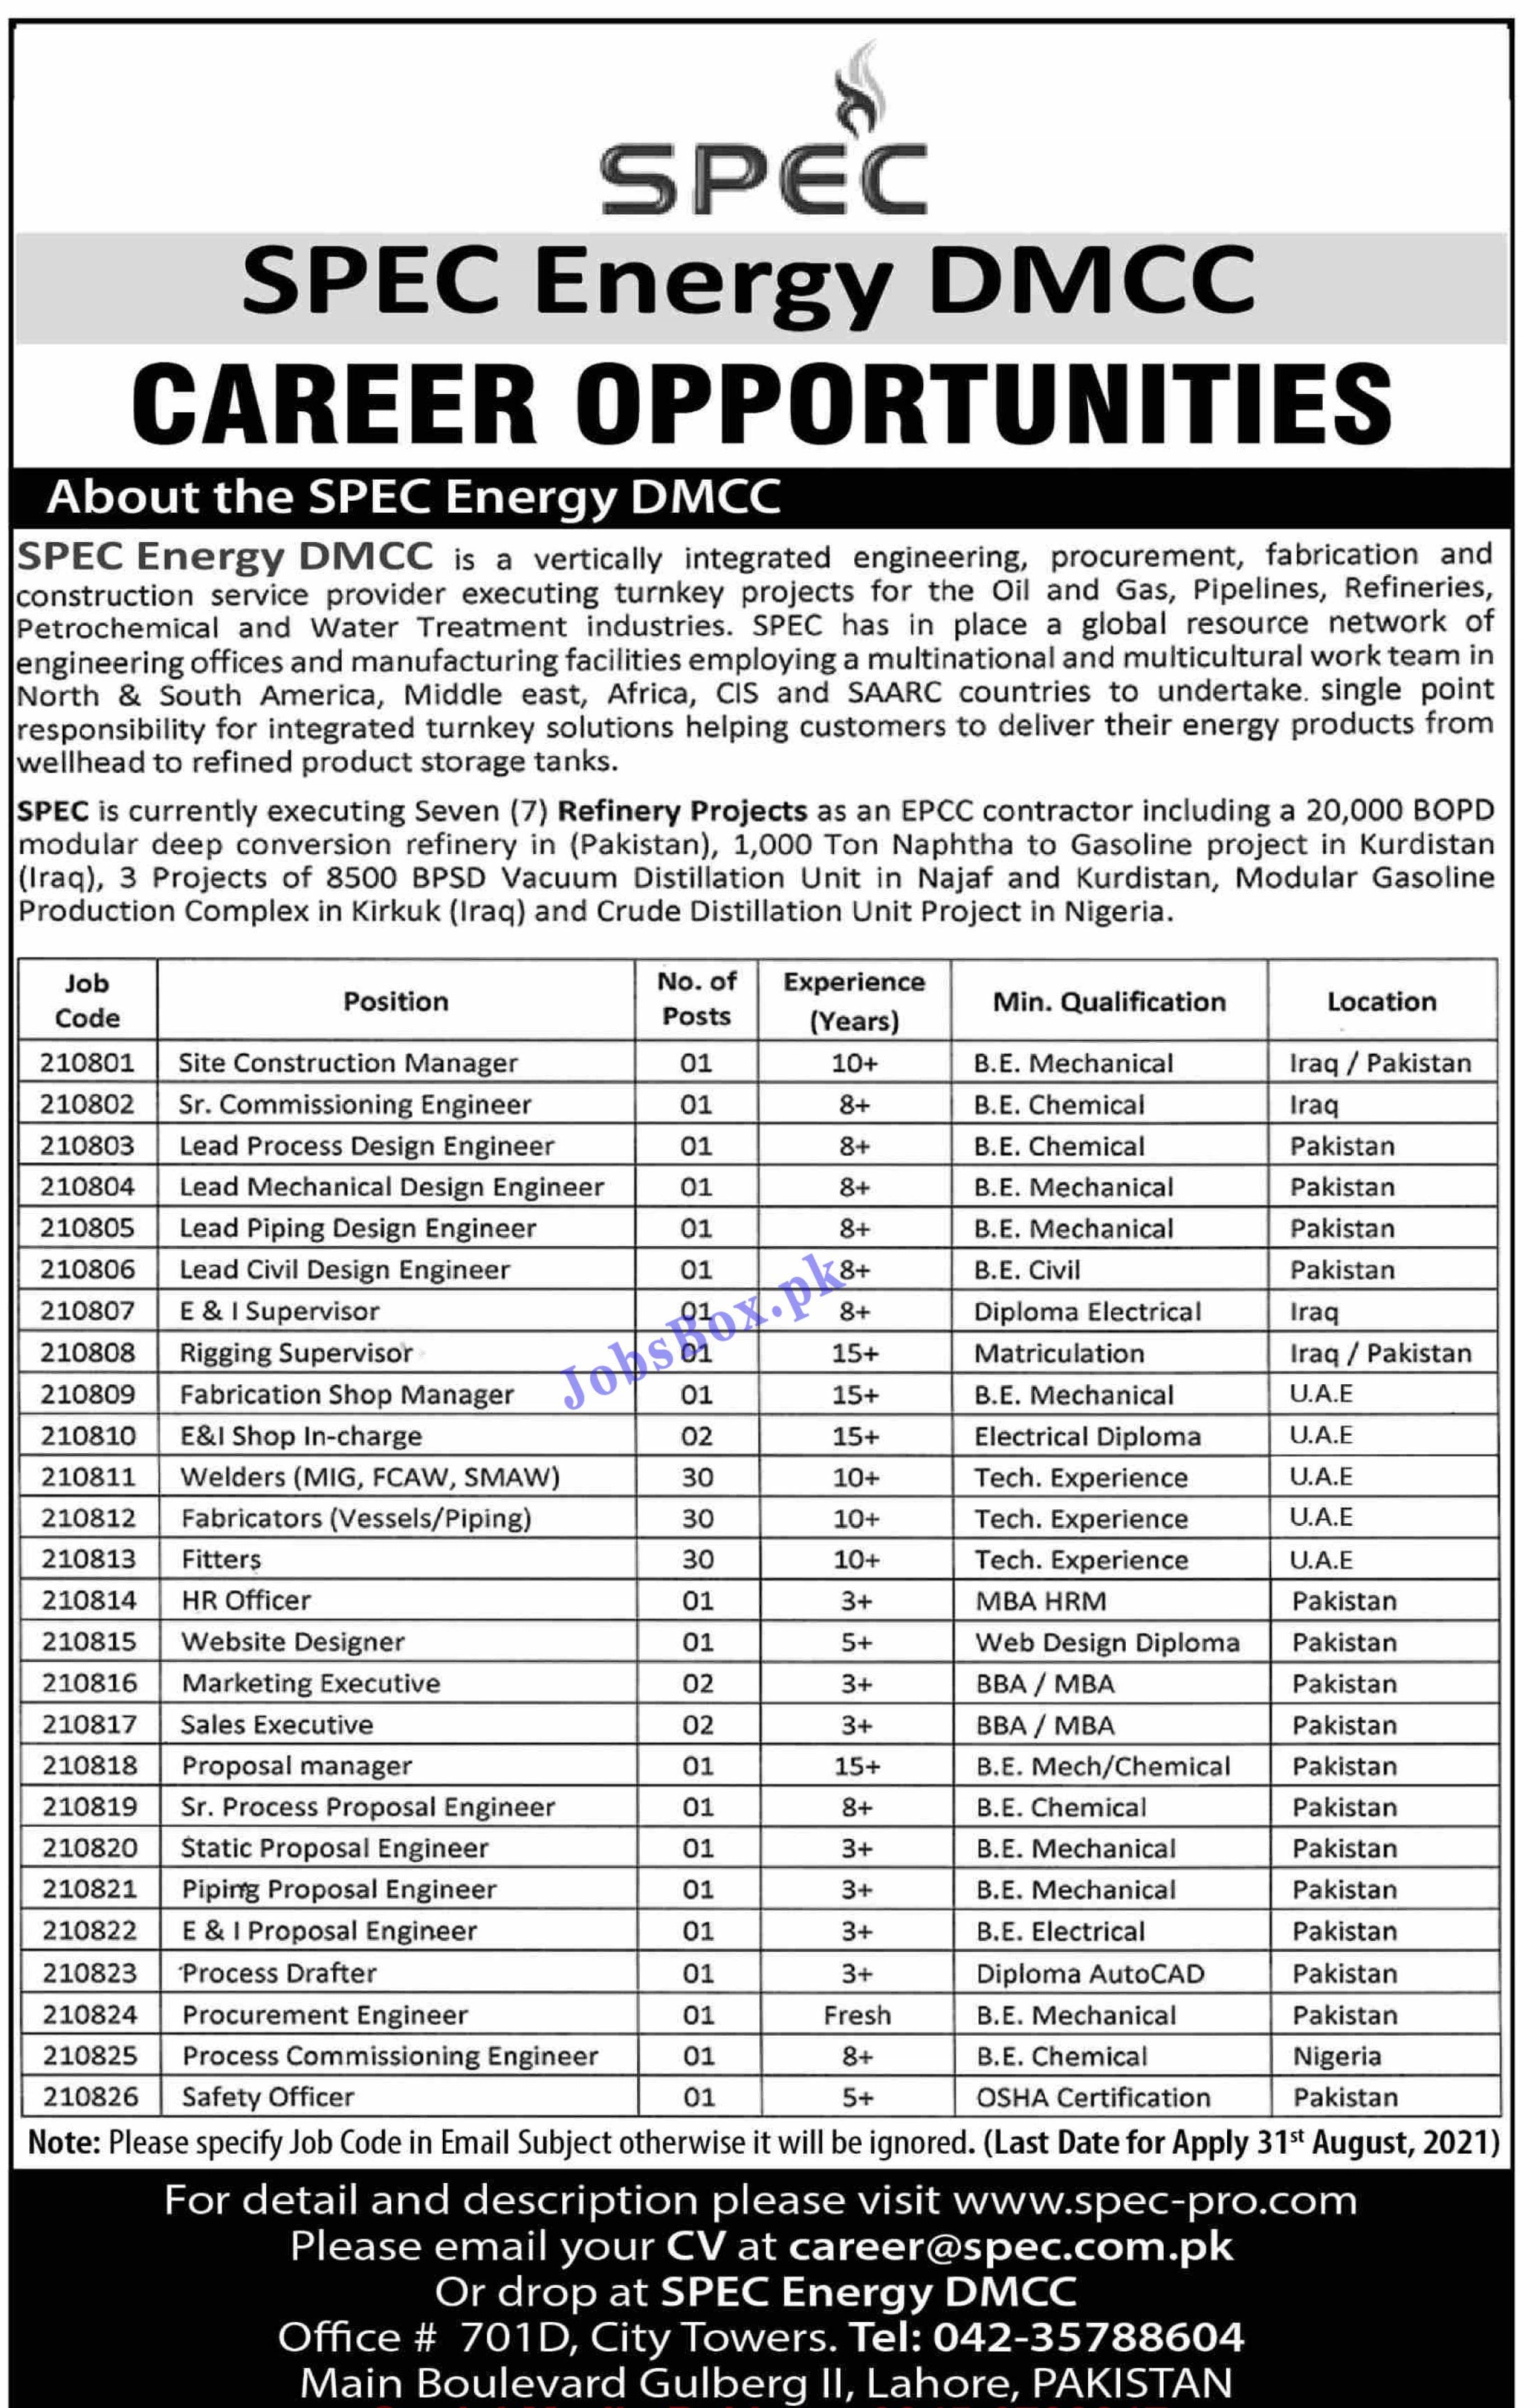 SPEC Energy DMCC Jobs 2021 - www.spec-pro.com